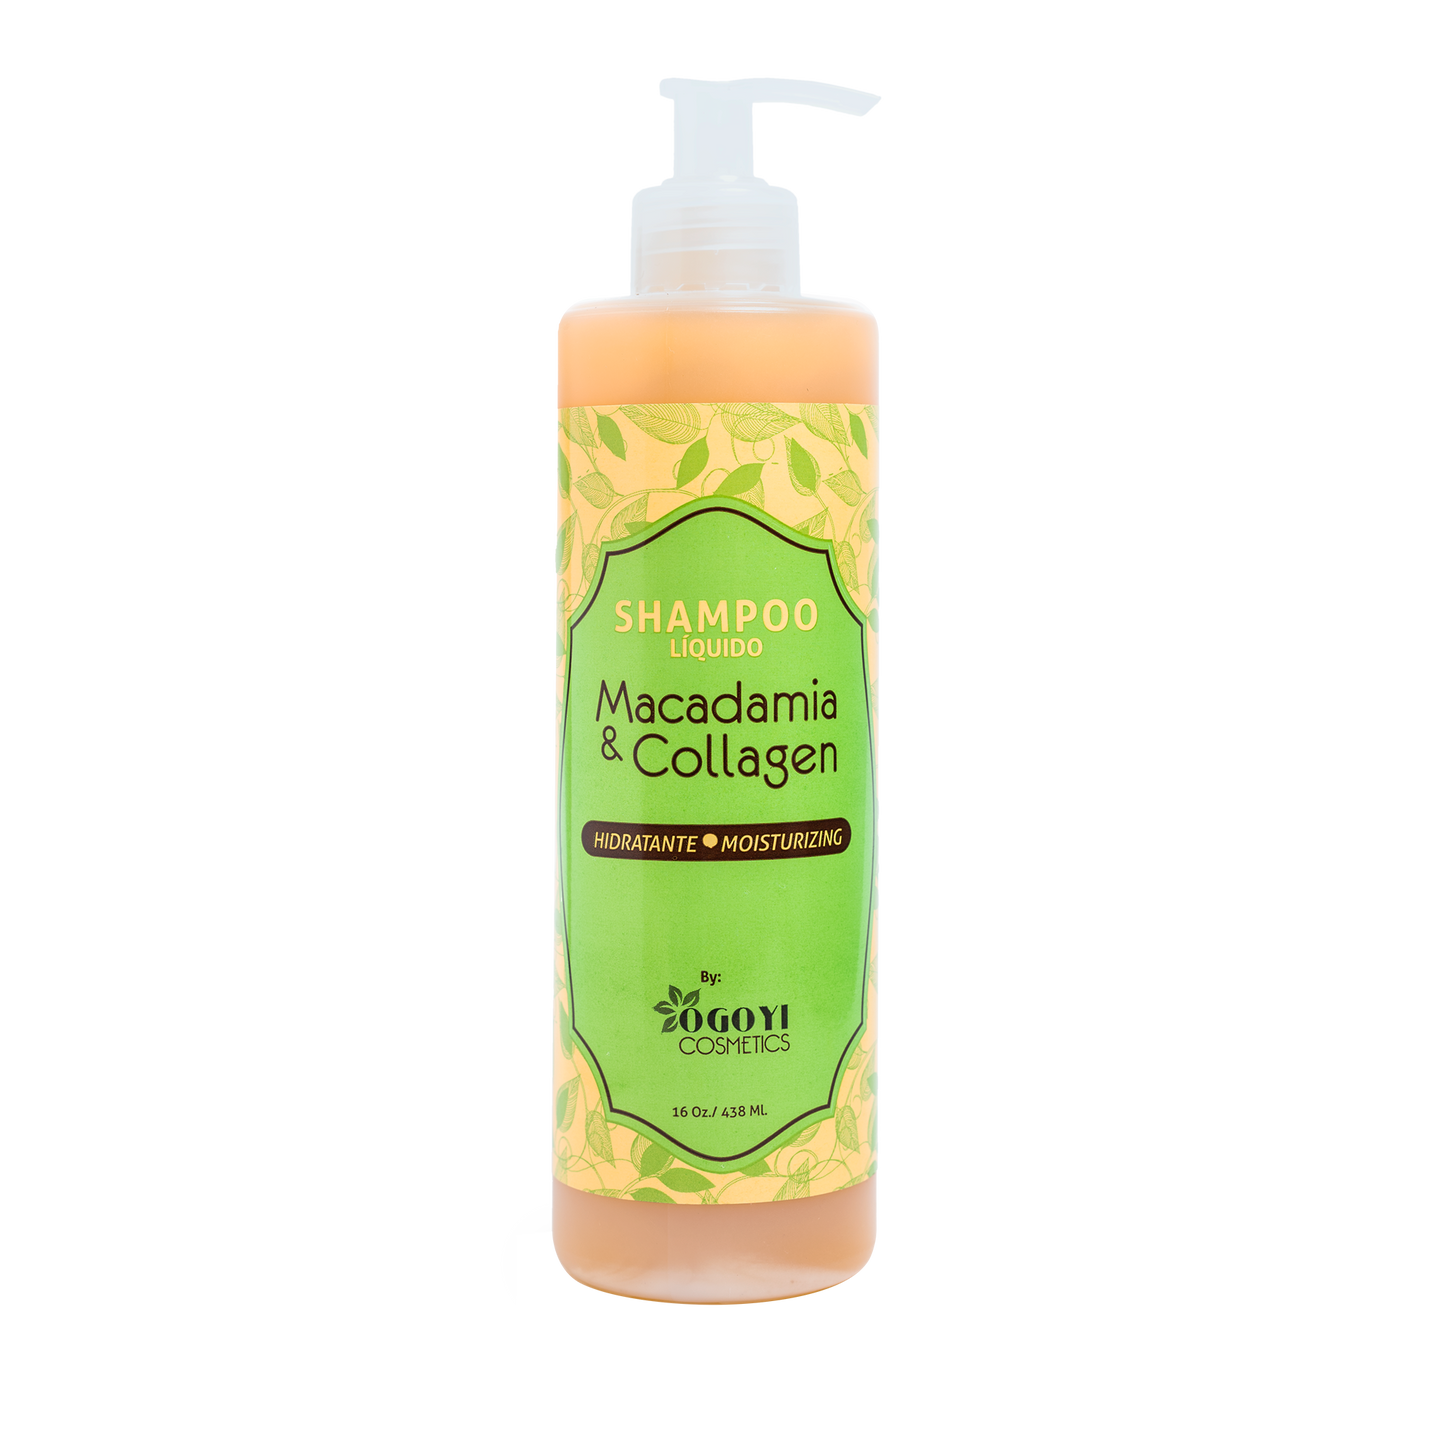 Shampoo Macadamia & Collagen - Halka Store - ¡Tienda Online Afro Love, Curly Love y demás productos con envío a domicilio a todo el país!